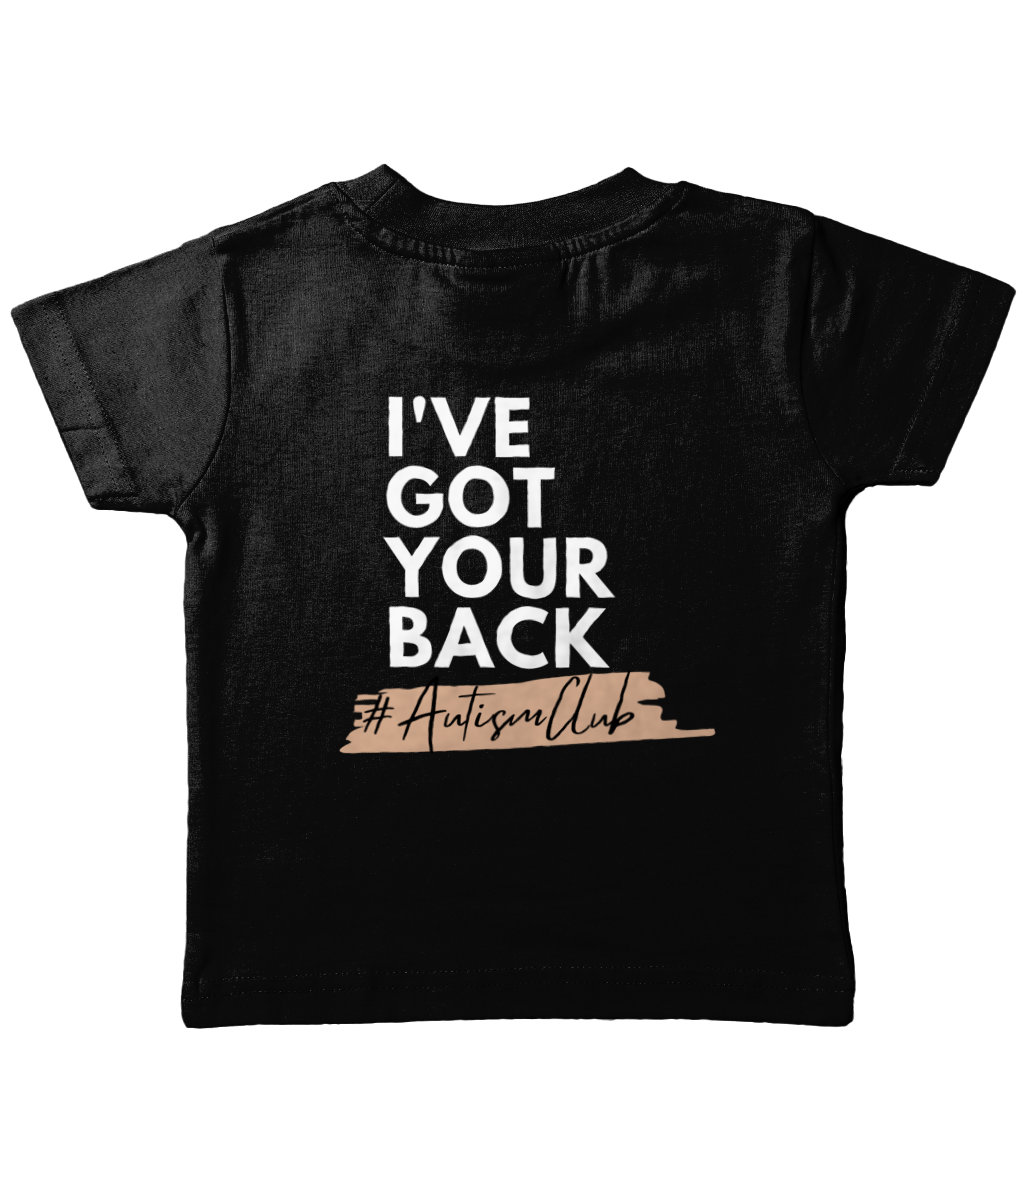 Kids - 'I've Got Your Back' T-shirt